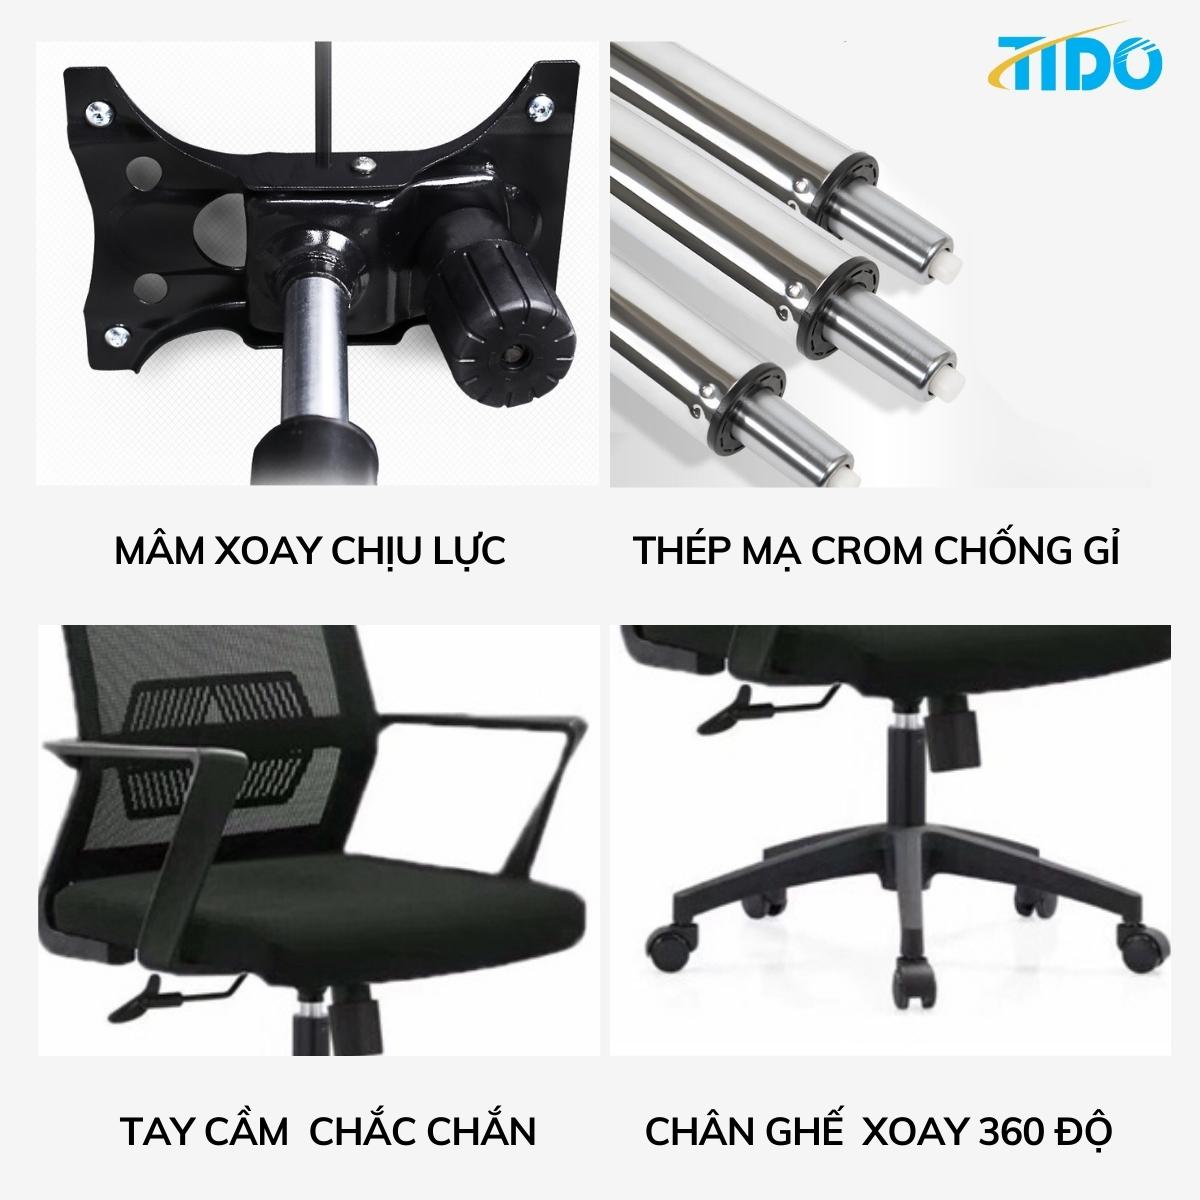 Ghế xoay văn phòng, tầm trung cấp - Hàng chính hãng TIDO - Lắp sẵn thân ghế dùng ngay - TI-GX03